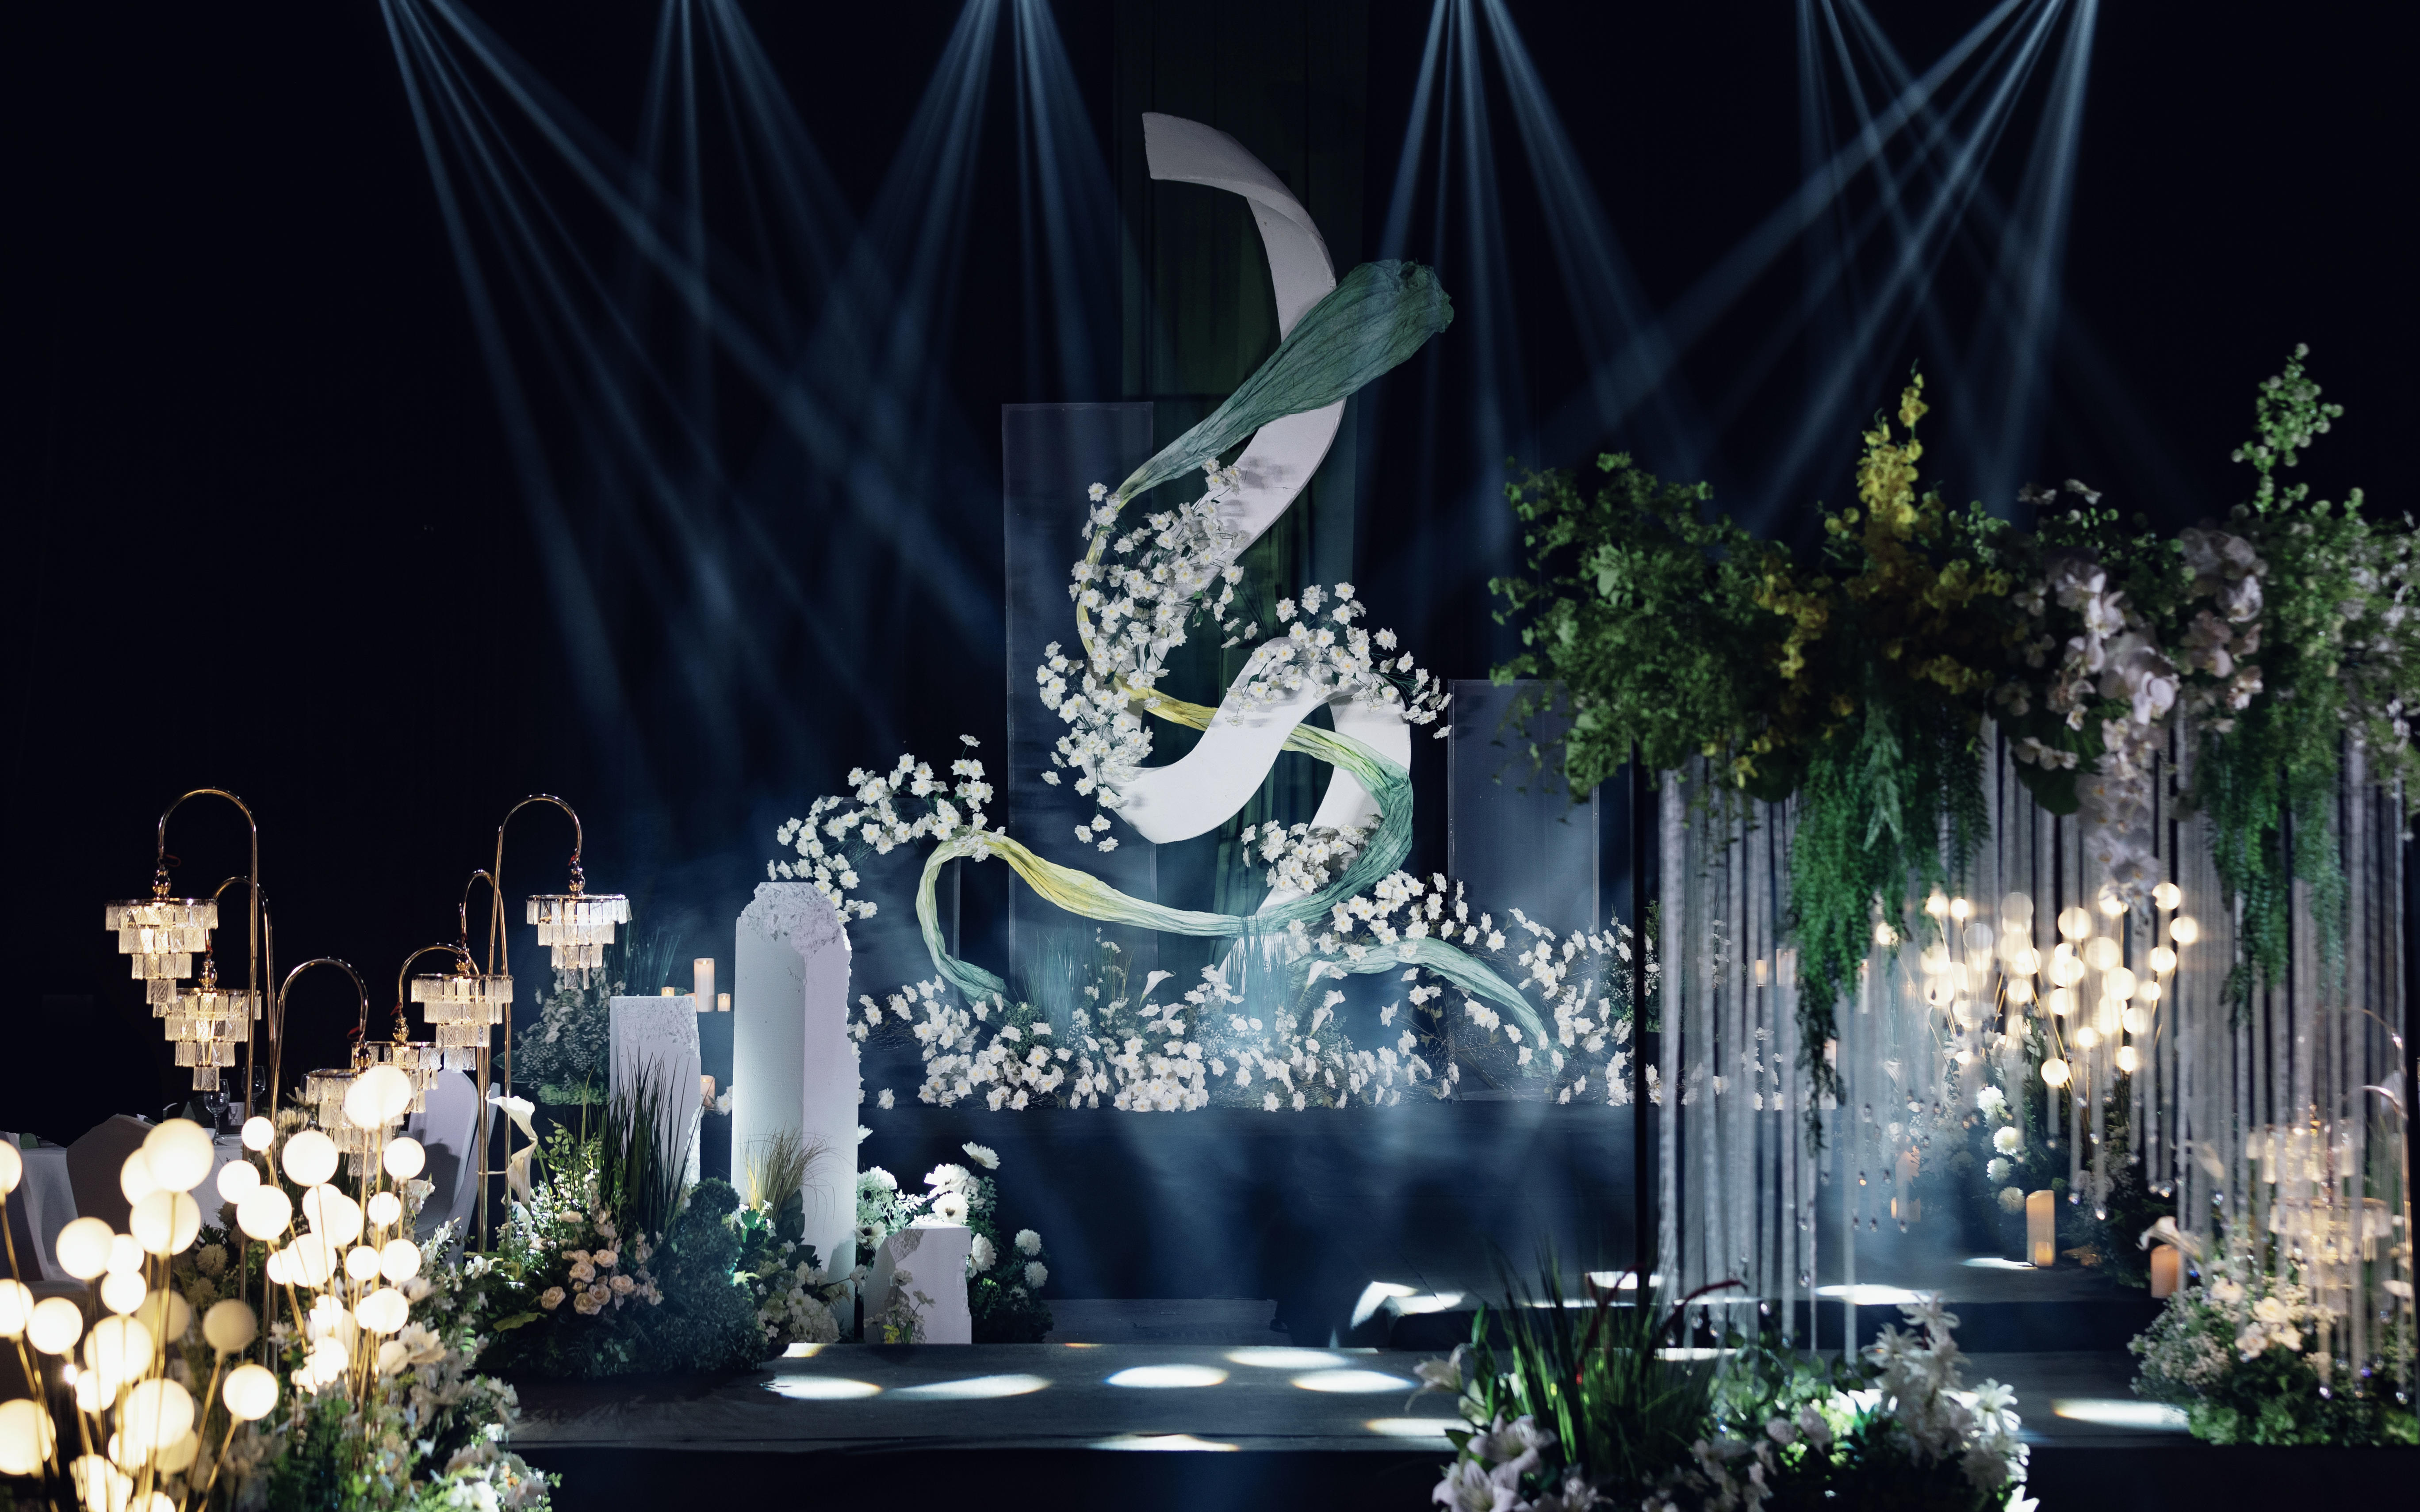 【百灵婚礼】 惊艳的白绿自然系花艺室内婚礼